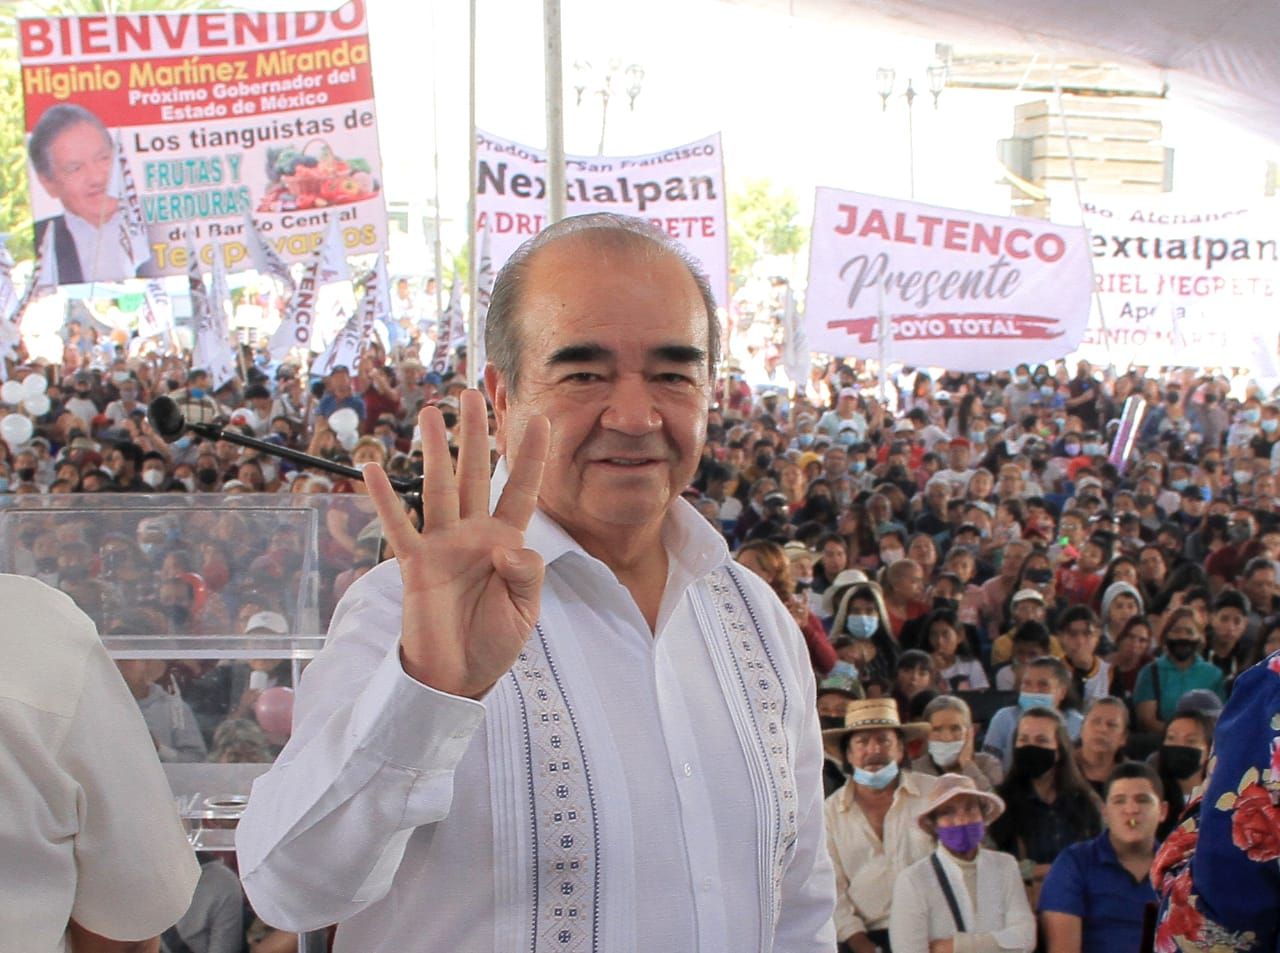 Externan liderazgos de Nextlalpan y Jaltenco total apoyo y respaldo al senador Higinio Martínez
